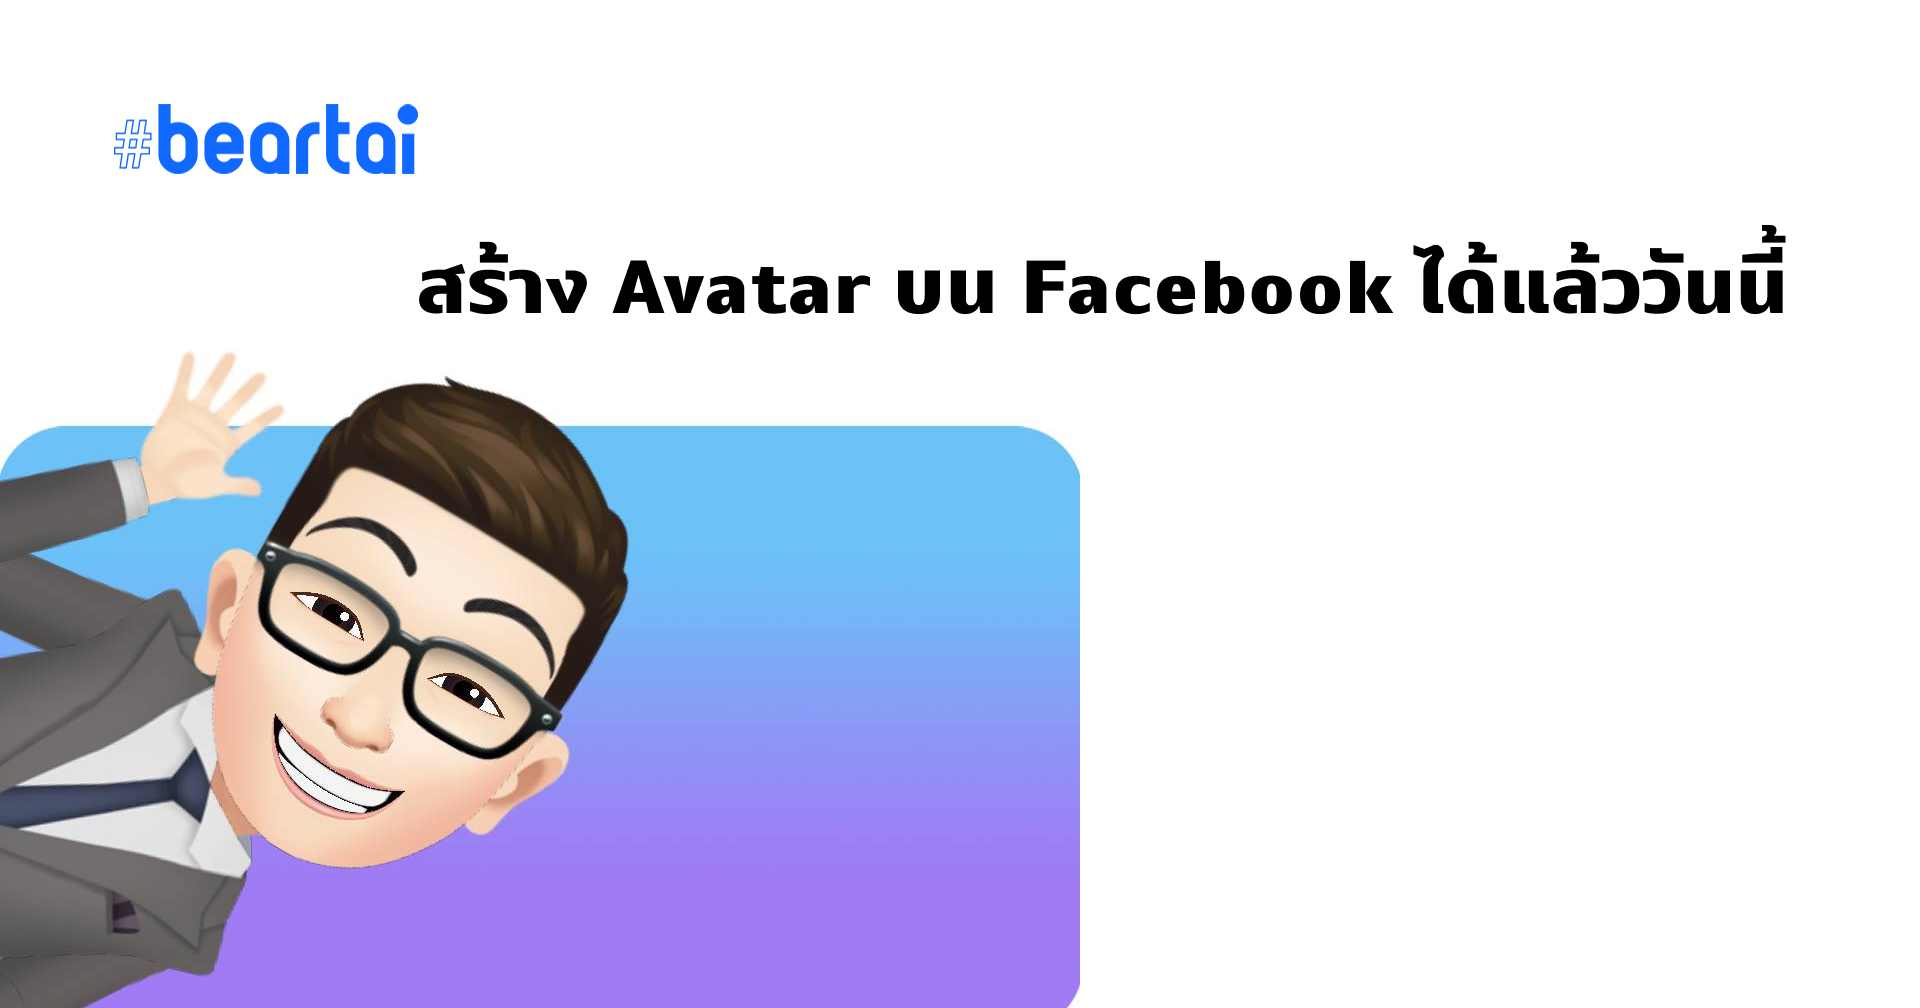 สร้างอวาตาร์ด้วย Facebook Avatar ได้ง่าย ๆ ใช้ส่งสติกเกอร์ได้ด้วยนะ